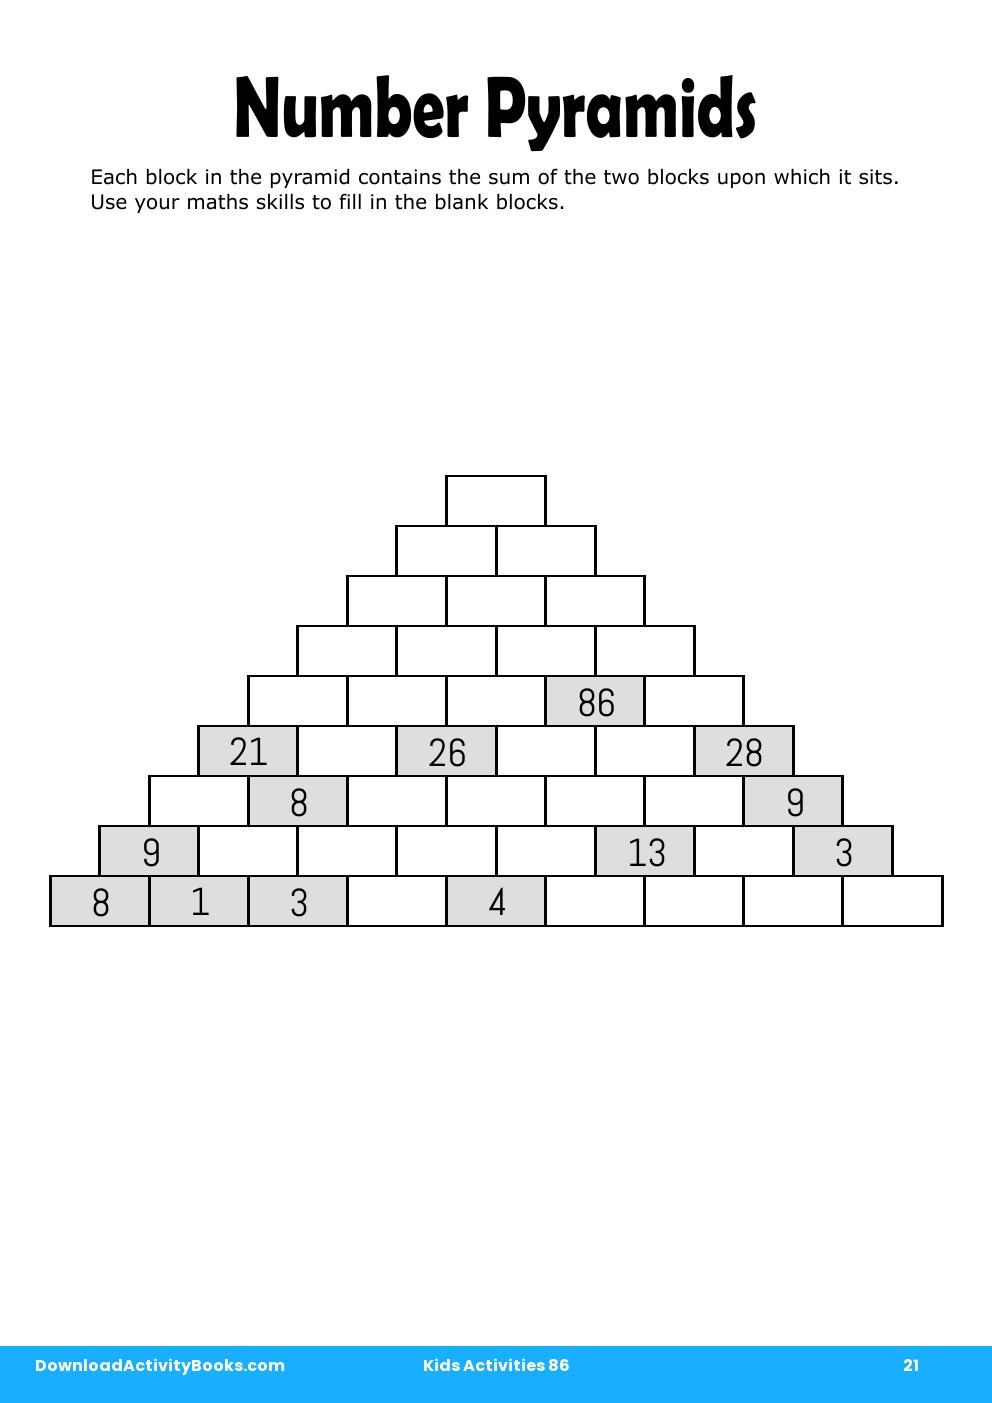 Number Pyramids in Kids Activities 86